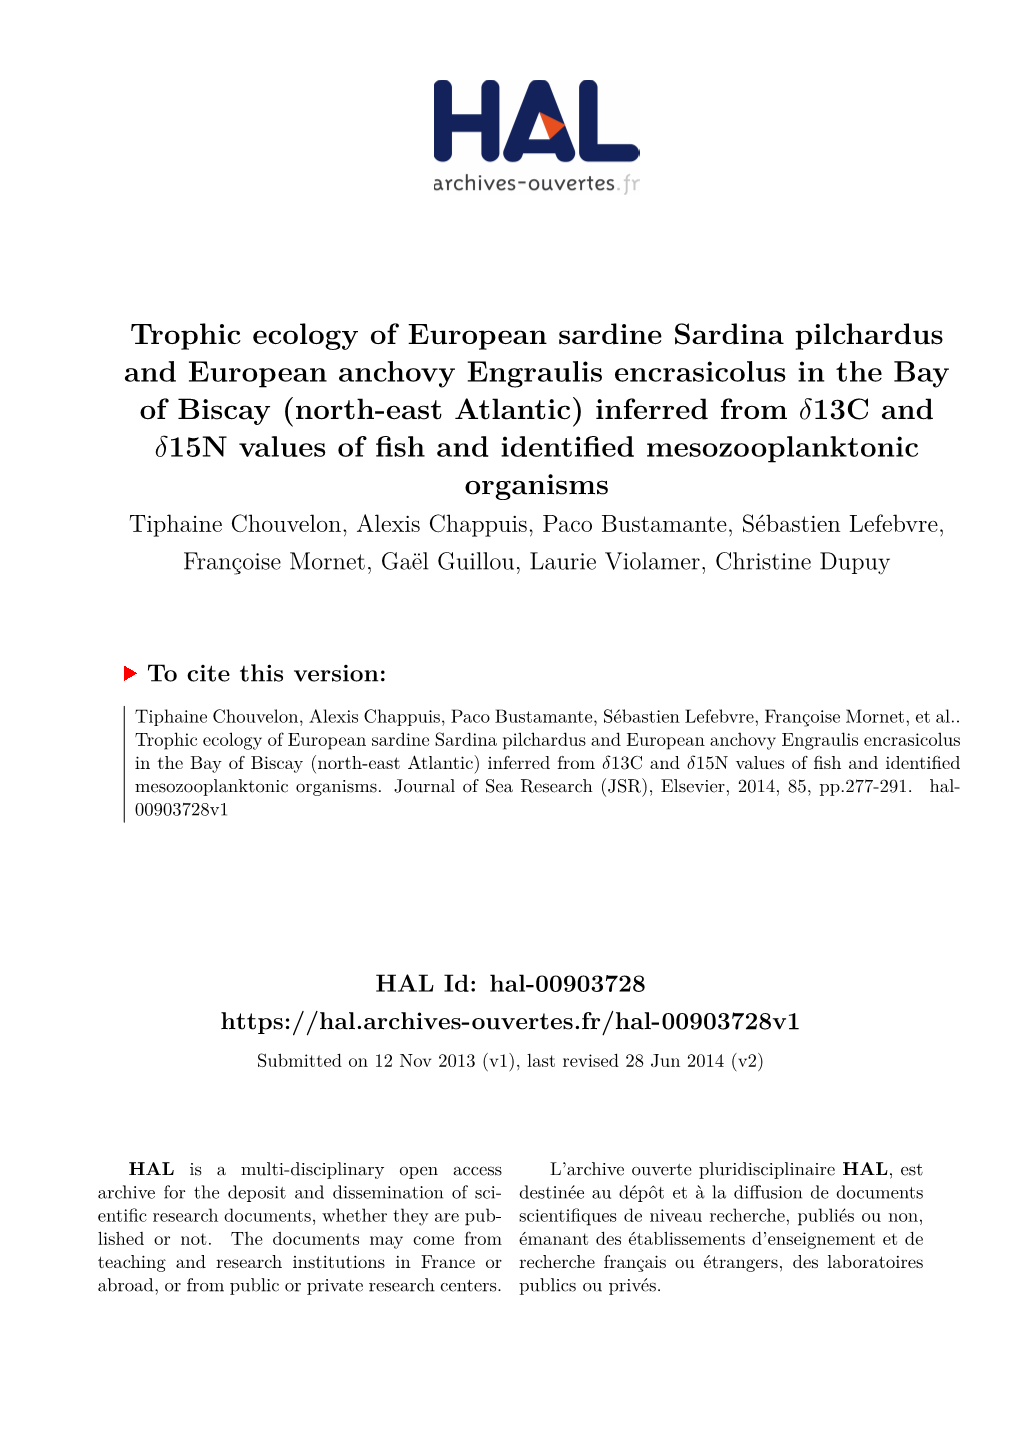 Trophic Ecology of European Sardine Sardina Pilchardus and European